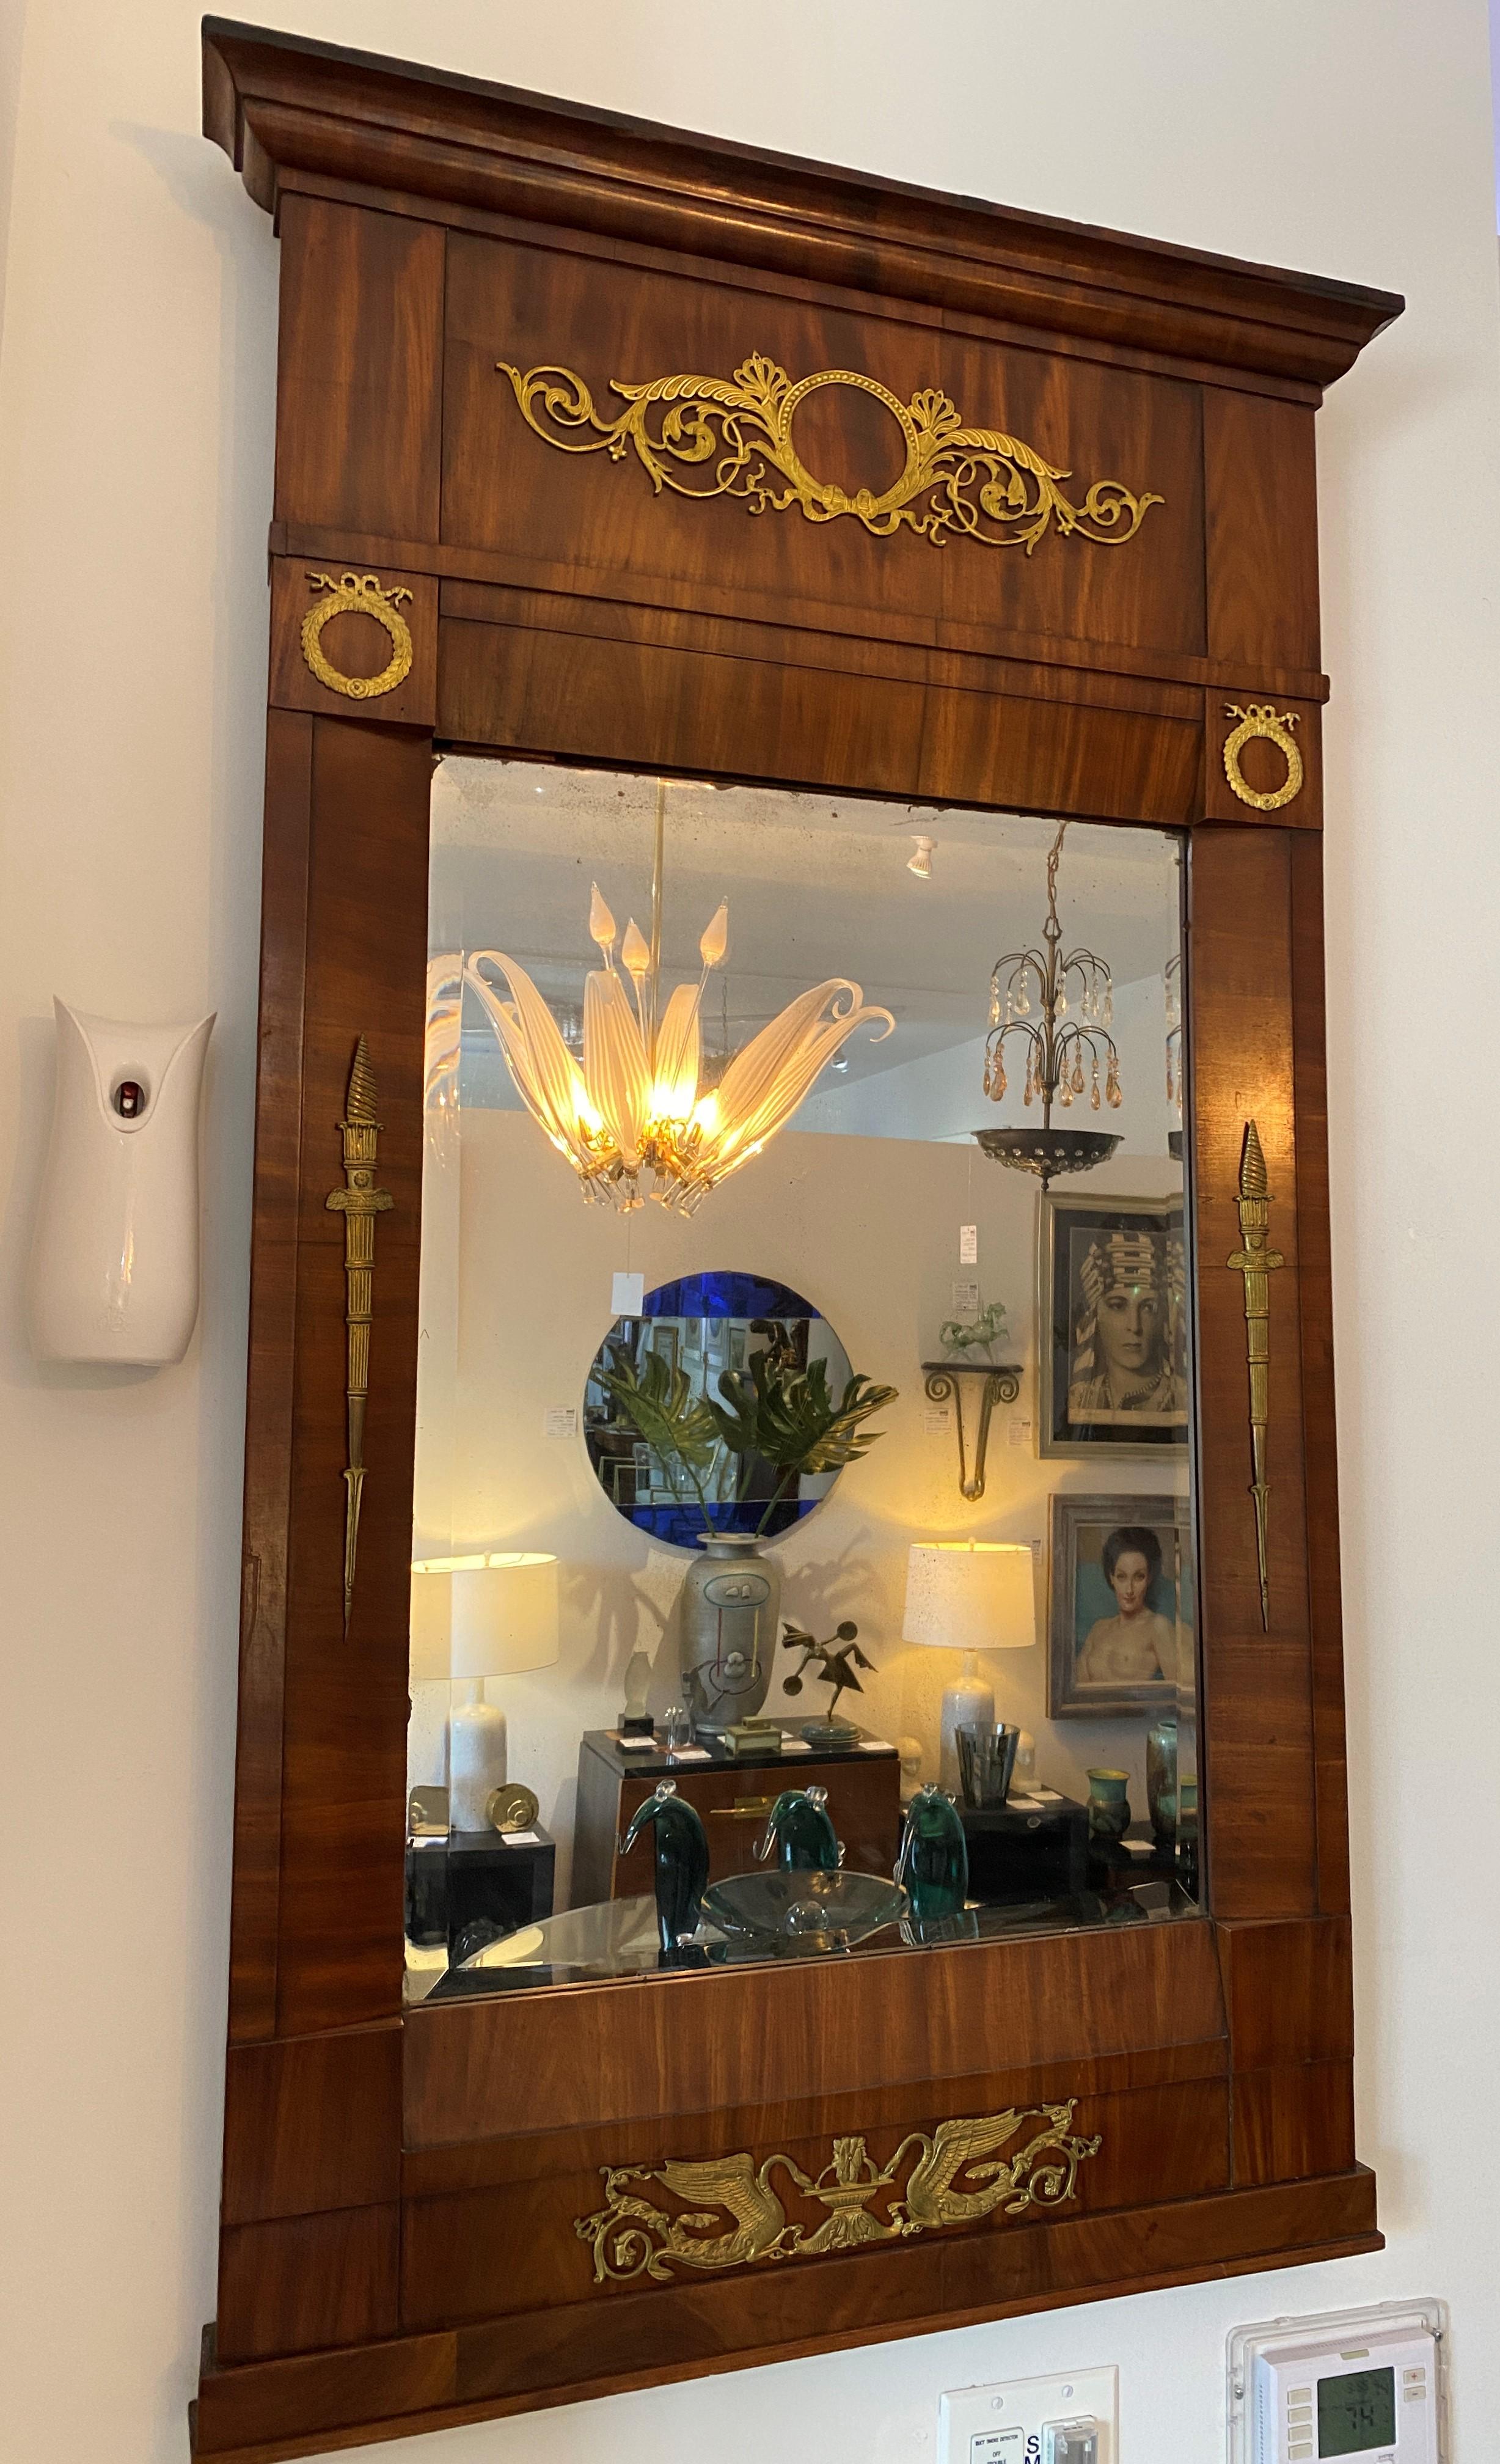 Dieser französische Empire-Trumeau-Spiegel stammt aus den 1810er Jahren und wurde aus einem Nachlass in Albany, NY, erworben.

Hinweis: Der Originalspiegel bleibt erhalten.